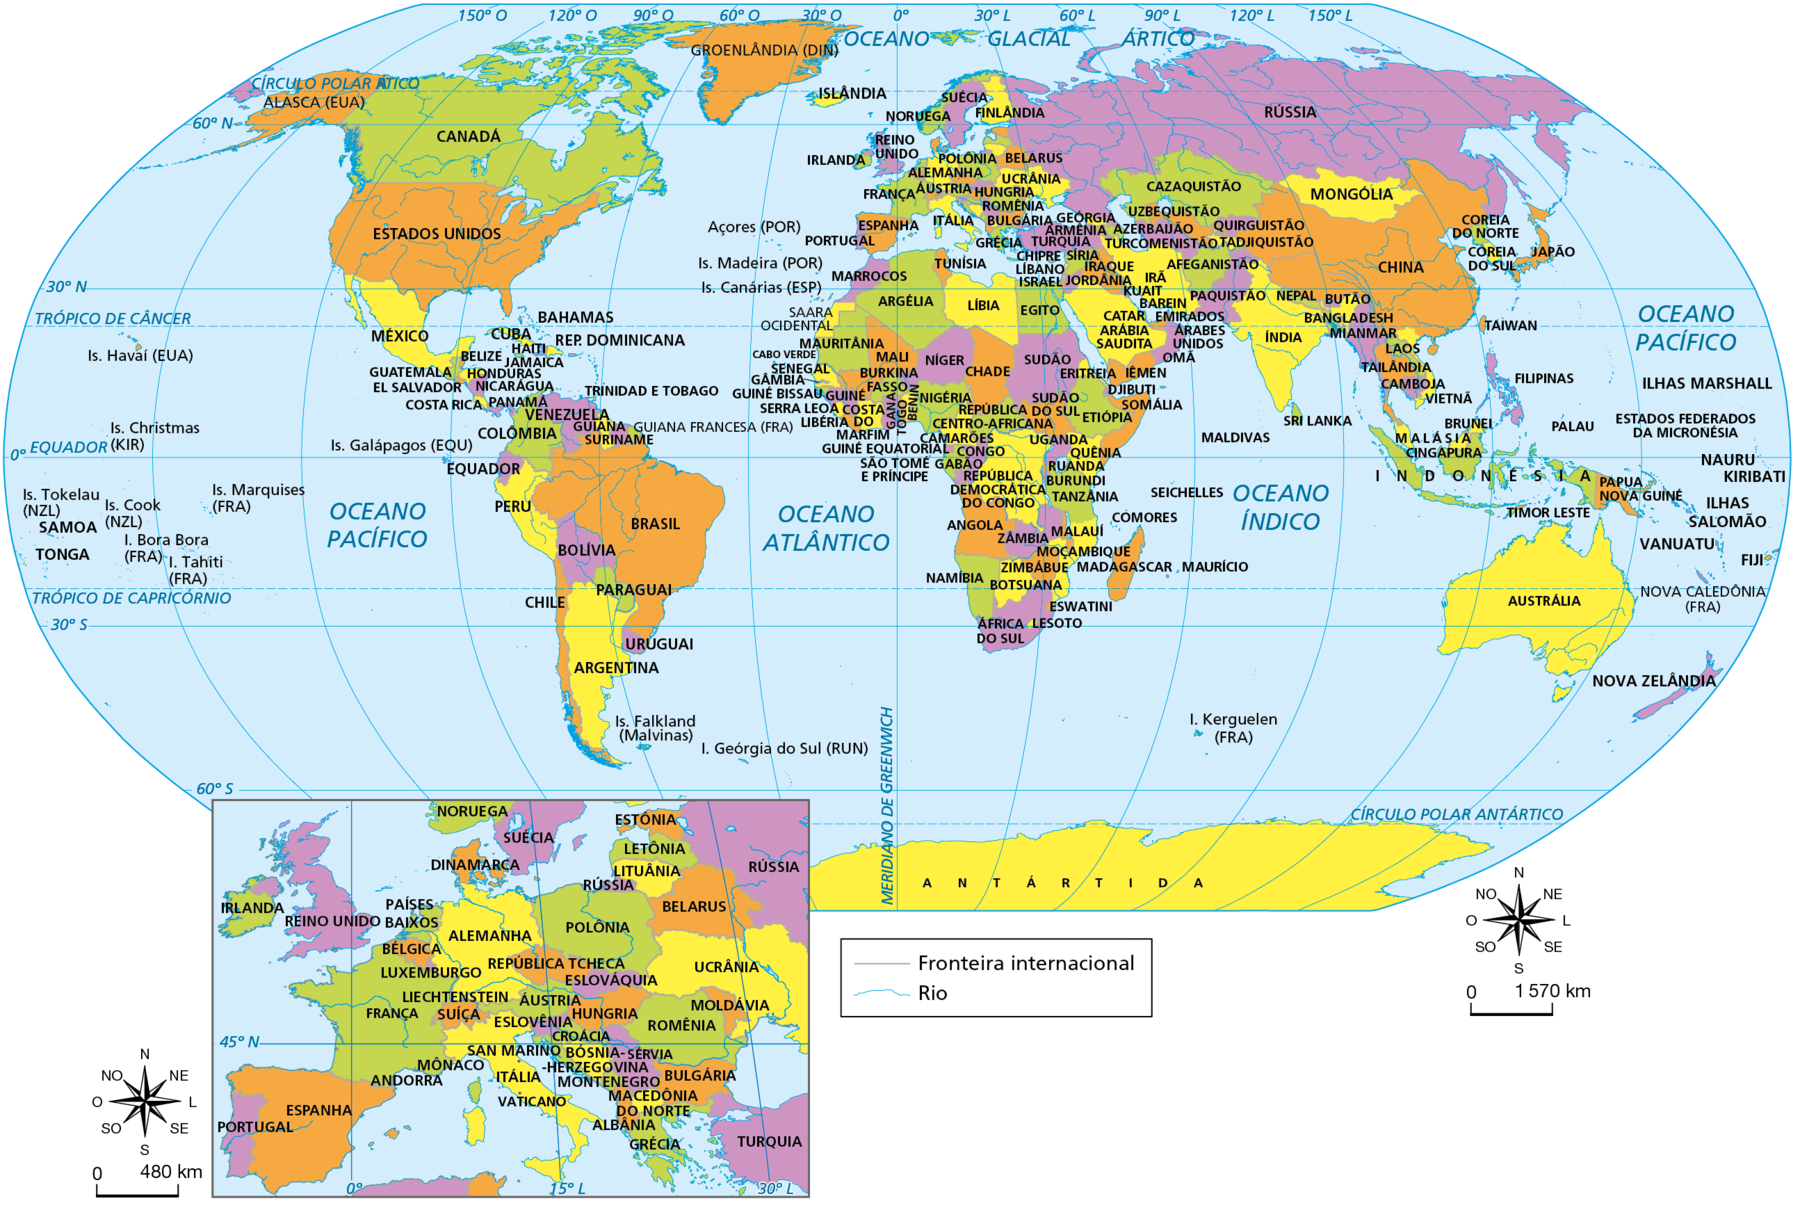 Mapa. Planisfério político. 
Ilhas do Havaí (Estados Unidos), Ilhas Christmas (Austrália), Ilhas Tokelau (Nova Zelândia), SAMOA, TONGA, Ilhas Cook (Nova Zelândia), Ilha Tahiti (França), Ilha Bora Bora (França), Ilhas Marquises, Ilhas Galápagos (Equador), ANTÁRTIDA, Alasca (Estados Unidos), Groenlândia (Dinamarca), CANADÁ, ESTADOS UNIDOS, MÉXICO, BAHAMAS, CUBA, JAMAICA HAITI, REPÚBLICA DOMINICANA, BELIZE, GUATEMALA, HONDURAS, EL SALVADOR, NICARÁGUA, COSTA RICA, TRINIDAD E TOBAGO, PANAMÁ, VENEZUELA, GUIANA, Guiana Francesa (França), SURINAME, COLÔMBIA, EQUADOR, PERU, BRASIL, BOLÍVIA, PARAGUAI, CHILE, URUGUAI, ARGENTINA, Ilhas Falkland (Malvinas), Ilha Geórgia do Sul (Reino Unido). 
Açores (Portugal), Ilhas Madeira (Portugal), Ilhas Canárias (Espanha), ISLÂNDIA, SUÉCIA, NORUEGA, FINLÂNDIA, DINAMARCA, REINO UNIDO, PAÍSES BAIXOS, BÉLGICA, LUXEMBURGO, LIECHTENSTEIN, SUÍÇA, IRLANDA, PORTUGAL, ESPANHA, FRANÇA, ANDORRA, MÔNACO, SAN MARINO, ITÁLIA, VATICANO, ESTÔNIA, LETÔNIA, LITUÂNIA, RÚSSIA, POLÔNIA, ALEMANHA, REPÚBLICA TCHECA, ÁUSTRIA, ESLOVÁQUIA, HUNGRIA, ESLOVÊNIA, CROÁCIA, BÓSNIA-HERZEGOVINA, SÉRVIA, MONTENEGRO, MACEDÔNIA DO NORTE, ALBÂNIA, GRÉCIA, TURQUIA, BULGÁRIA, ROMÊNIA, MOLDÁVIA, UCRÂNIA, BELARUS, CHIPRE, LÍBANO, ISRAEL, SÍRIA, IRAQUE, JORDÂNIA, KUAIT, BAREIN, CATAR, ARÁBIA SAUDITA, IÊMEM, OMÃ, EMIRADOS ÁRABES UNIDOS, IRÃ, AFEGANISTÃO, GEÓRGIA, ARMÊNIA, AZERBAIJÃO, TURCOMENISTÃO, CAZAQUISTÃO, UZBEQUISTÃO, QUIRGUISTÃO, TADJIQUISTÃO, PAQUISTÃO, ÍNDIA, MALDIVAS, SRI LANKA, NEPAL, BUTÃO, BANGLADESH, MIANMAR, LAOS, TAILÂNDIA, CAMBOJA, VIETNÃ, CHINA, MONGÓLIA, COREIA DO NORTE, COREIA DO SUL, JAPÃO, TAIWAN, FILIPINAS, PALAU, BRUNEI, MALÁSIA, CINGAPURA, INDONÉSIA, TIMOR LESTE, PAPUA NOVA GUINÉ, ILHAS MARSHALL, ESTADOS FEDERADOS DA MICRONÉSIA, NAURU, KIRIBATI, ILHAS SALOMÃO, VANUATU, FIJI, Nova Caledônia (França), AUSTRÁLIA, NOVA ZELÂNDIA, SAARA OCIDENTAL, MARROCOS, TUNÍSIA, MAURITÂNIA, ARGÉLIA, LÍBIA, EGITO, CABO VERDE, SENEGAL, GÂMBIA, GUINÉ BISSAU, MALI, NÍGER, CHADE, SUDÃO, ERITREIA, DJIBUTI, GUINÉ, SERRA LEOA, LIBÉRIA, COSTA DO MARFIM, BURKINA FASSO, GANA, TOGO, BENIM, NIGÉRIA, GUINÉ EQUATORIAL, SÃO TOMÉ E PRÍNCIPE, CAMARÕES, REPÚBLICA CENTRO AFRICANA, GABÃO, CONGO, REPÚBLICA DEMOCRÁTICA DO CONGO, SUDÃO DO SUL, UGANDA, ETIÓPIA, SOMÁLIA, QUÊNIA, RUANDA, BURUNDI, TANZÂNIA, ANGOLA, ZÂMBIA, MALAUÍ, COMORES, SEICHELLS, NAMÍBIA, ZIMBABUE, BOTSUANA, MOÇAMBIQUE, MADAGASCAR, MAURÍCIO, ESWATINI, ÁFRICA DO SUL, LESOTO, Ilha Kerguelen (França). 
No canto inferior direito, rosa dos ventos e escala de zero a 1.570 quilômetros.
No canto inferior esquerdo, destaque para os países da Europa, com respectiva